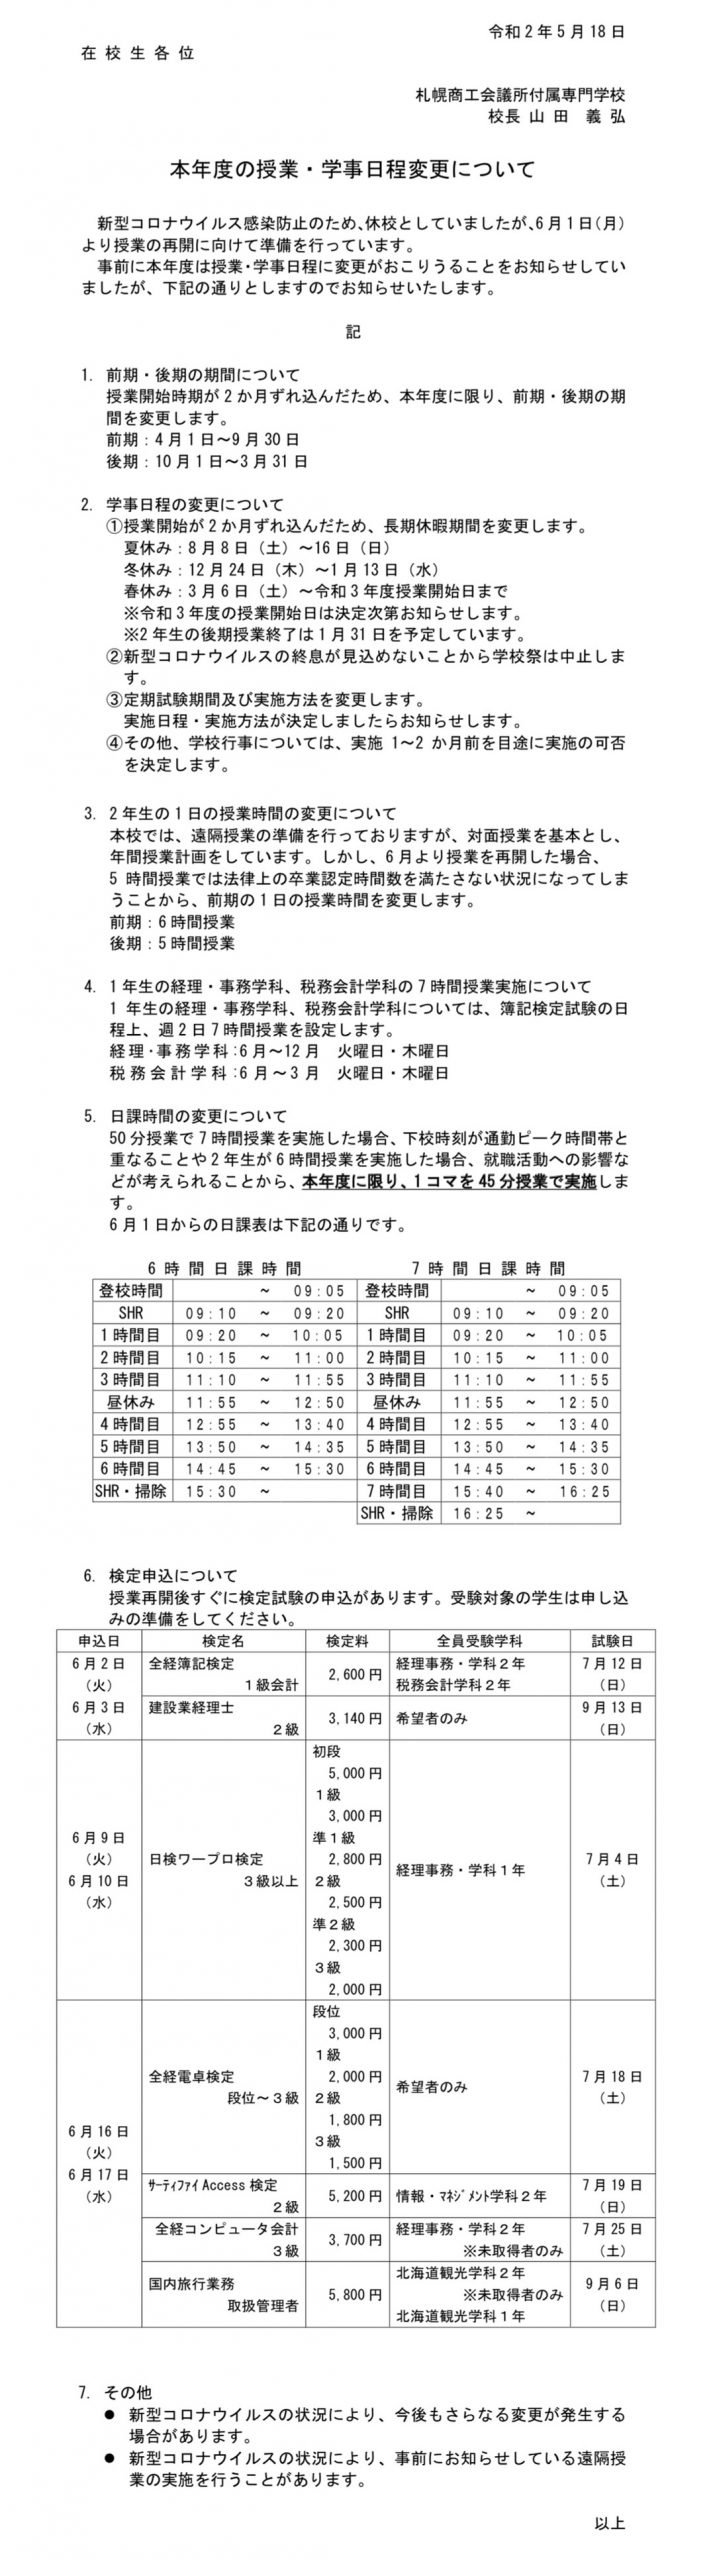 重要 本年度の授業 学事日程変更について 札幌商工会議所付属専門学校